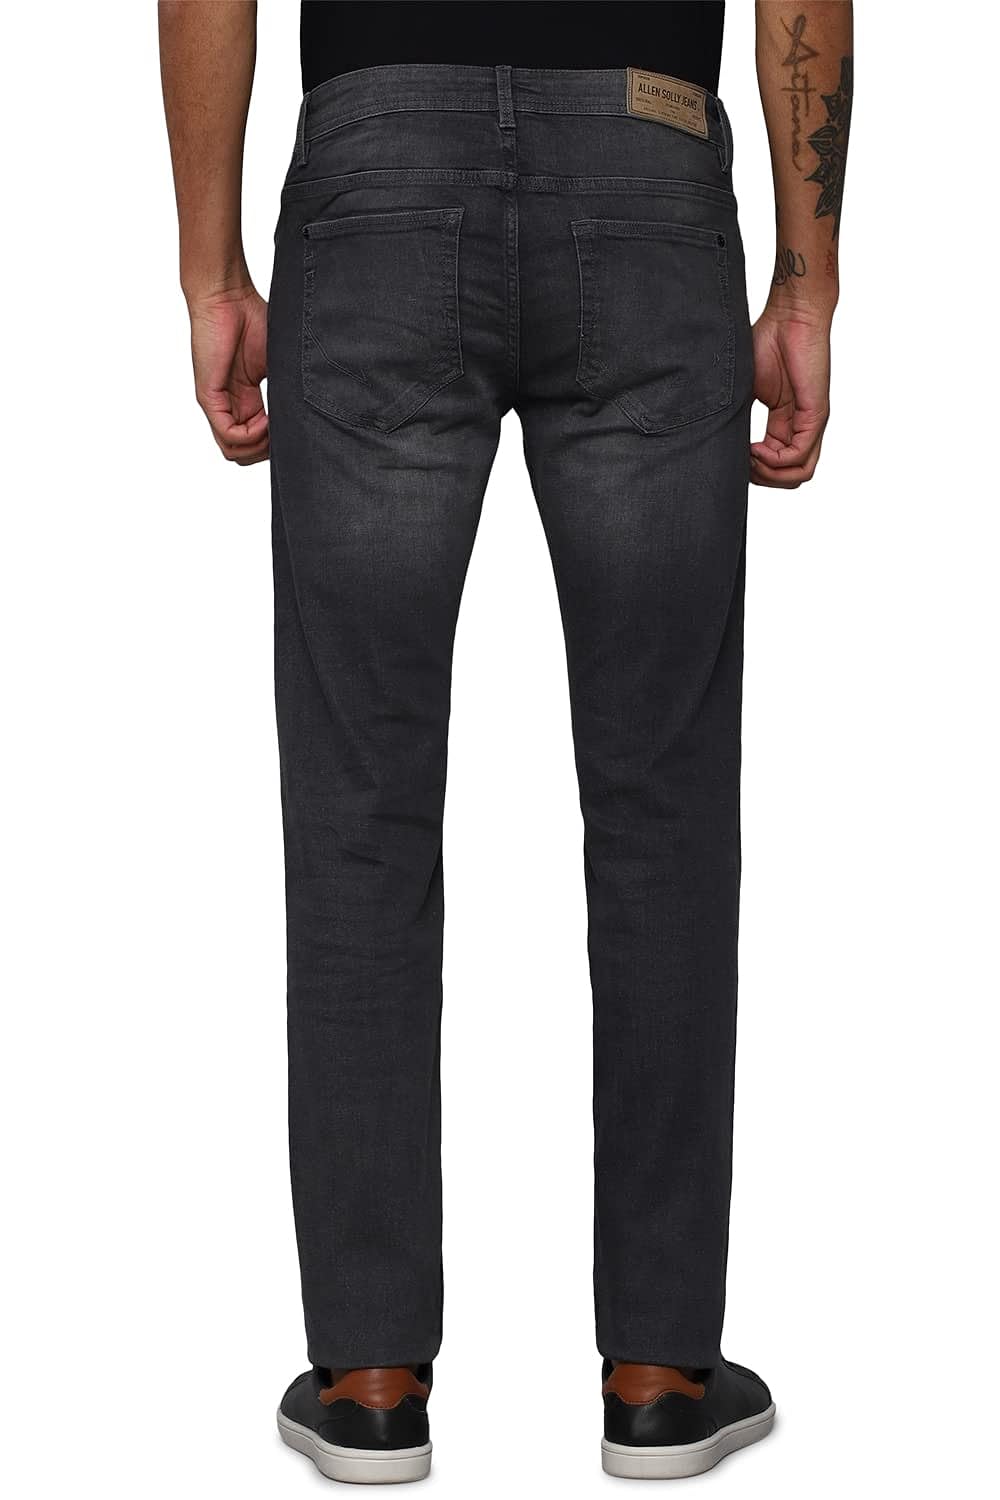 Allen Solly Men's Skinny Jeans (ALDNVSKFL70563_Grey_38) 